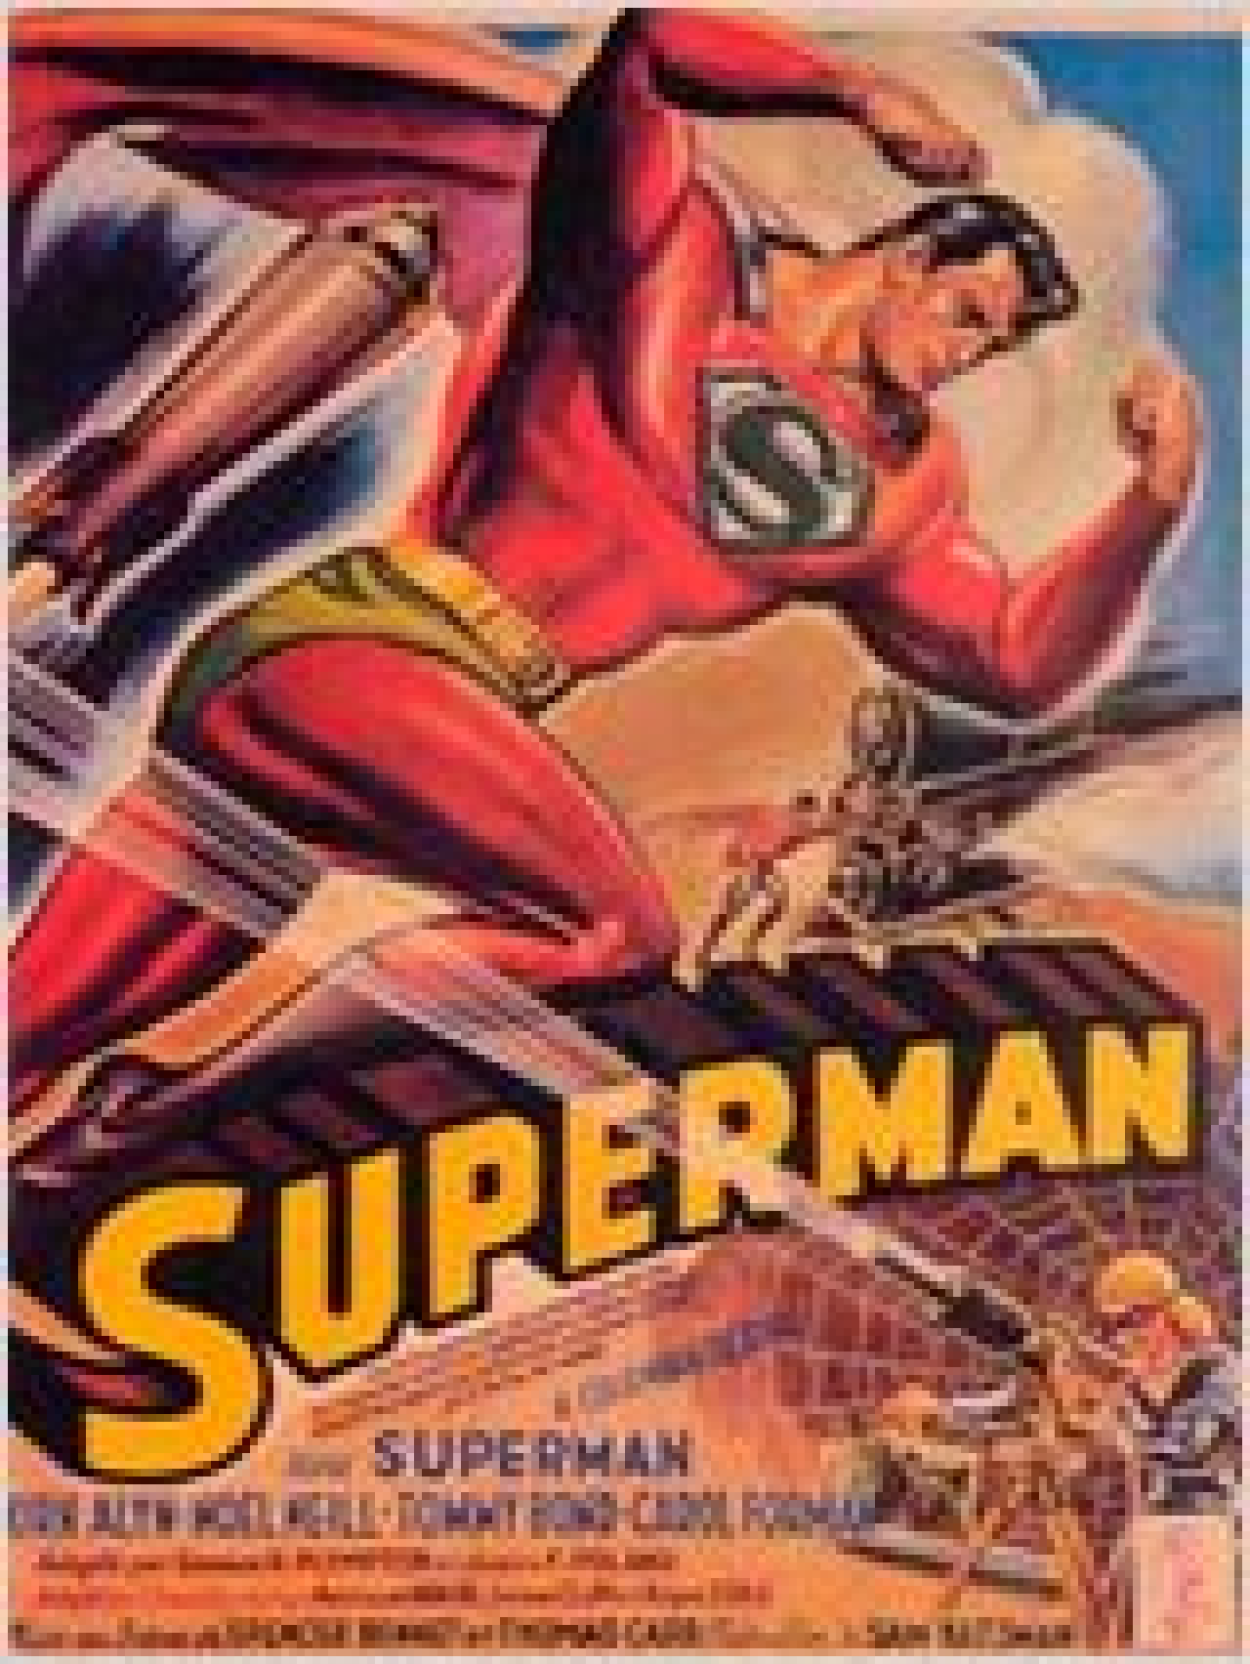 Filme do Super-Homem bate recordes na estreia nos EUA - Atualidade